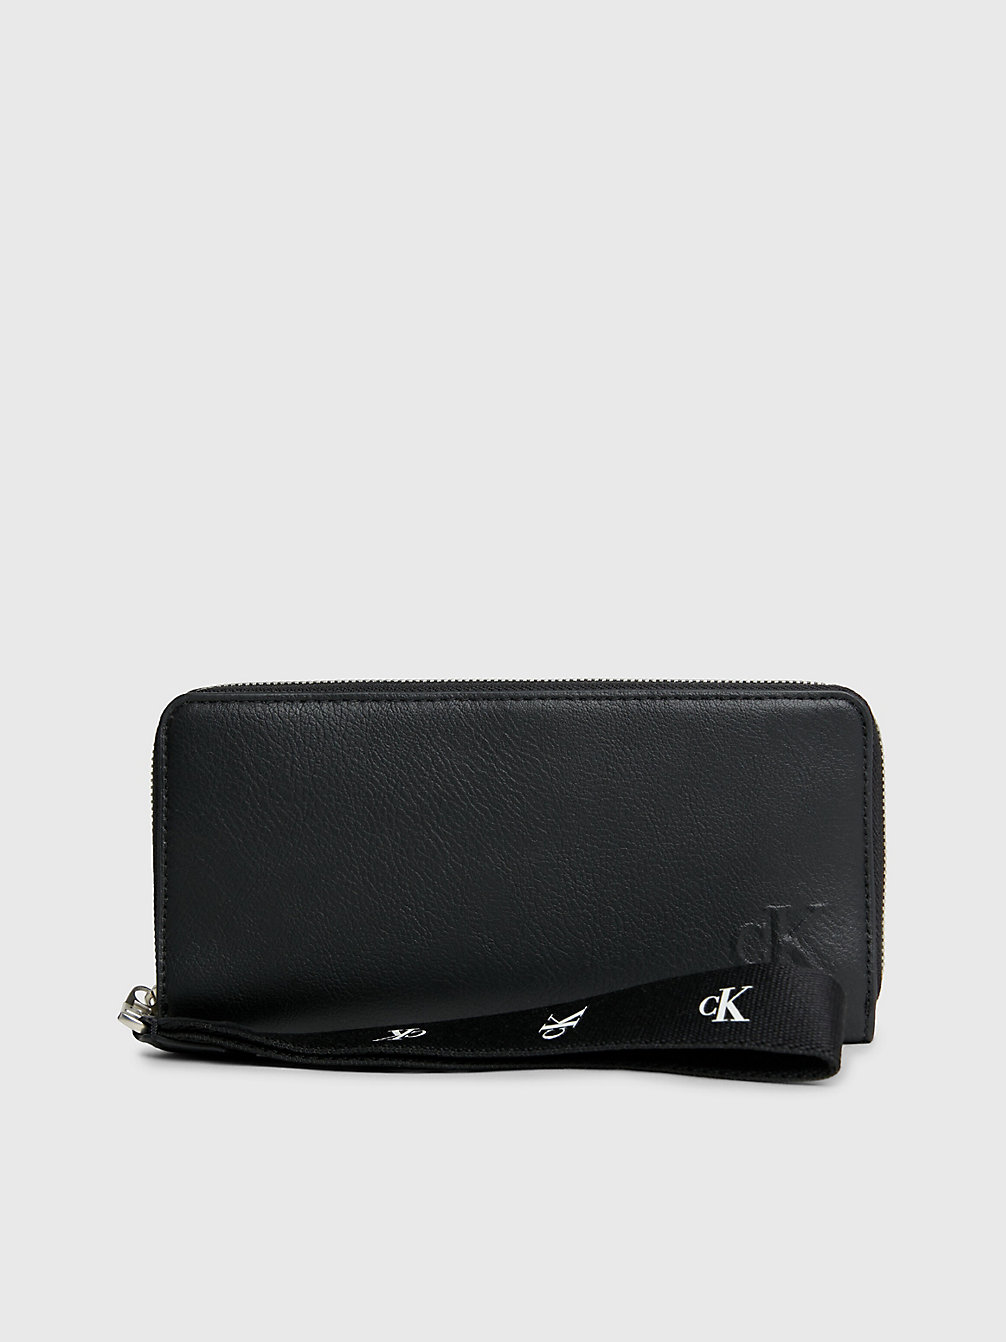 BLACK Armbandtaschen-Portemonnaie Mit Rundum-Reißverschluss Aus Recyceltem Material undefined Damen Calvin Klein